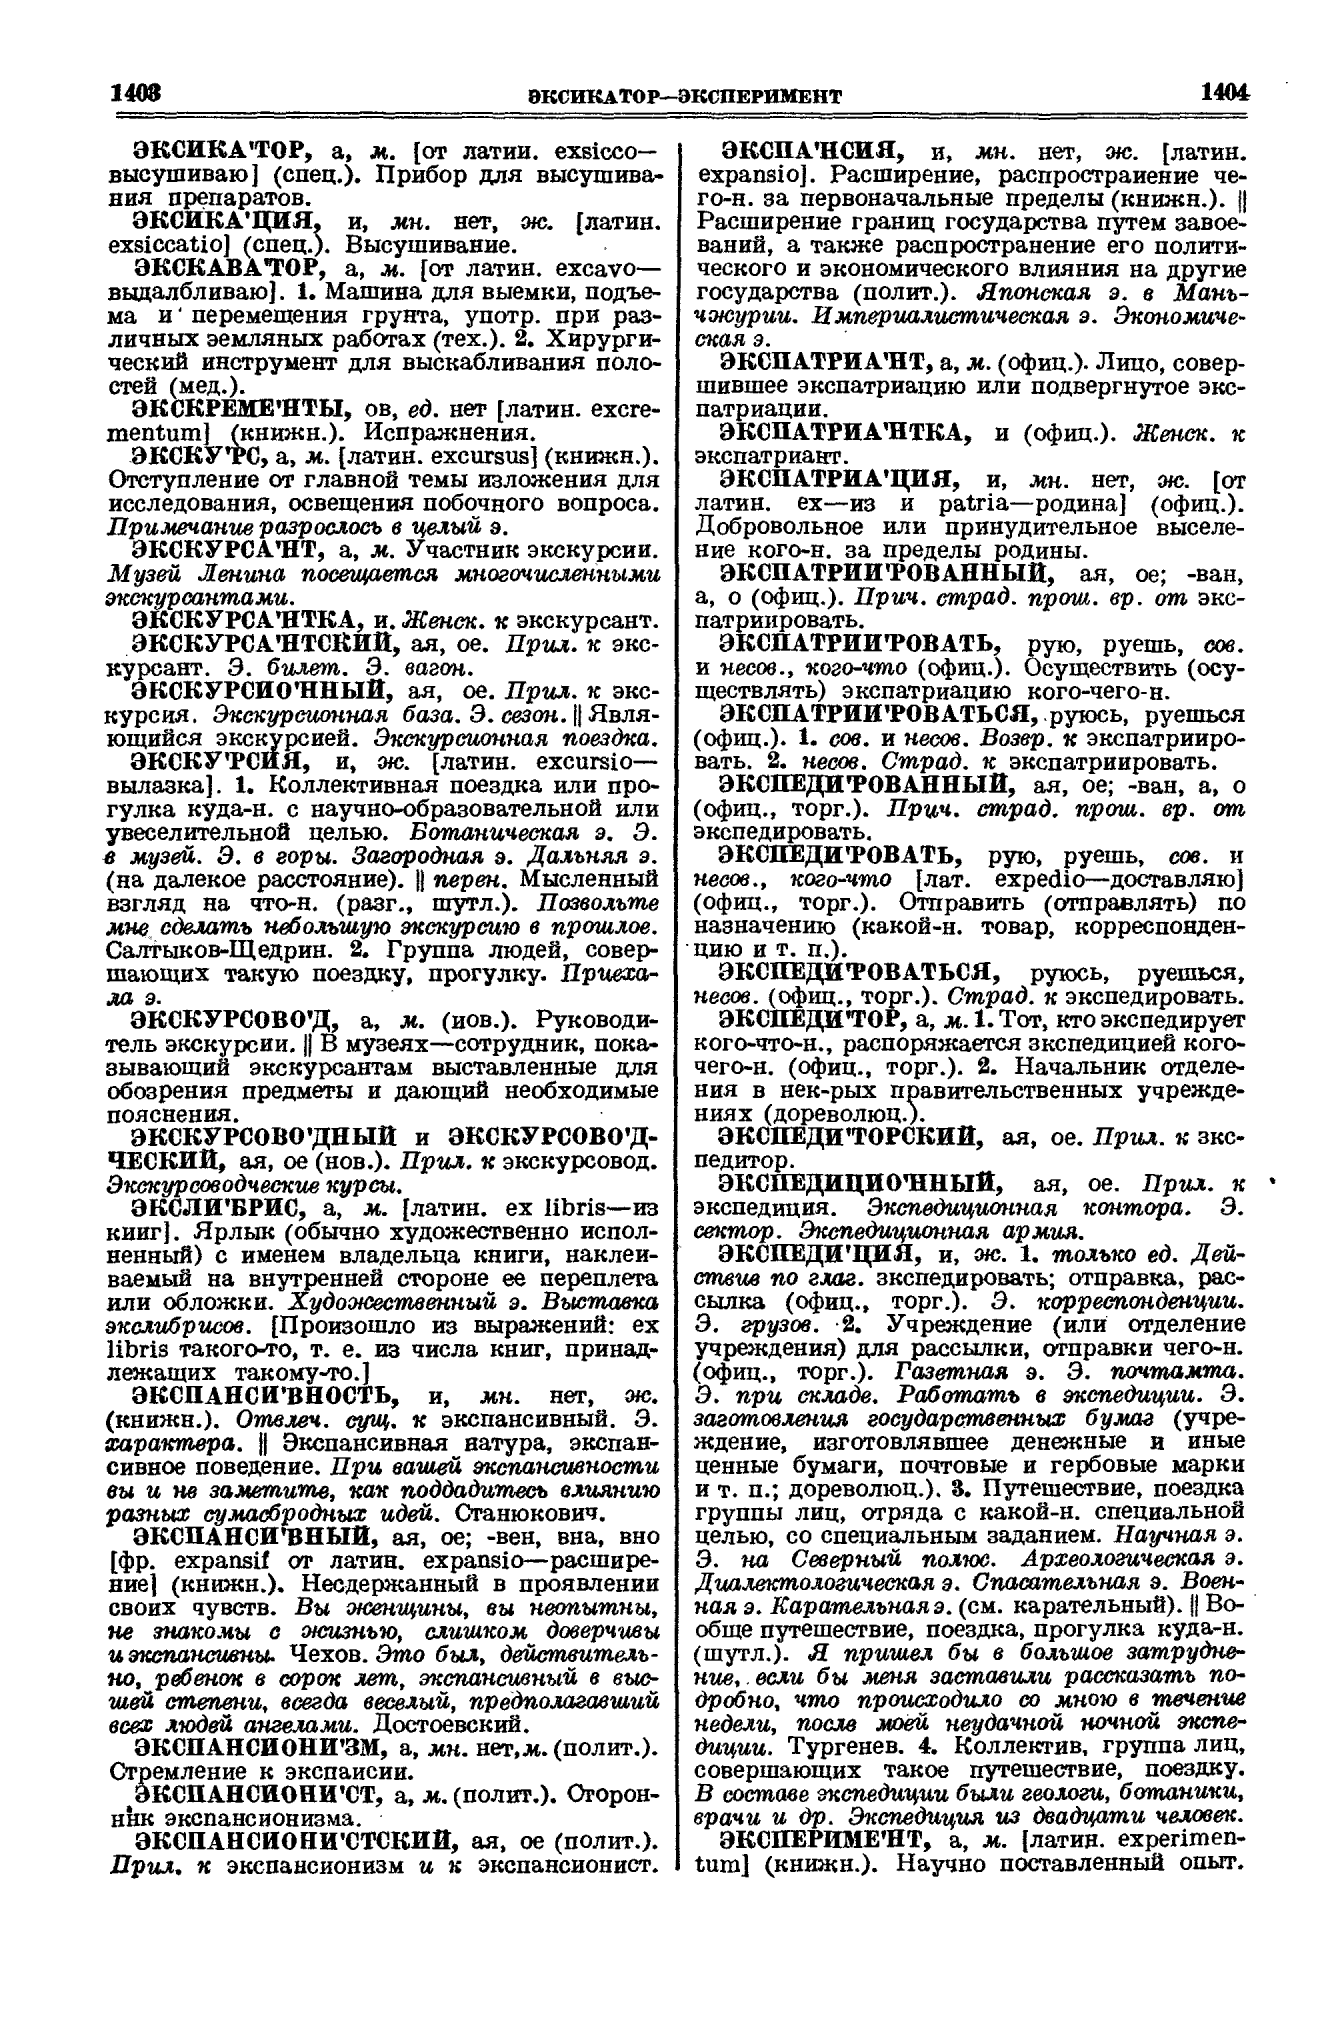 Фотокопия pdf / скан страницы 702 толкового словаря Ушакова (том 1)